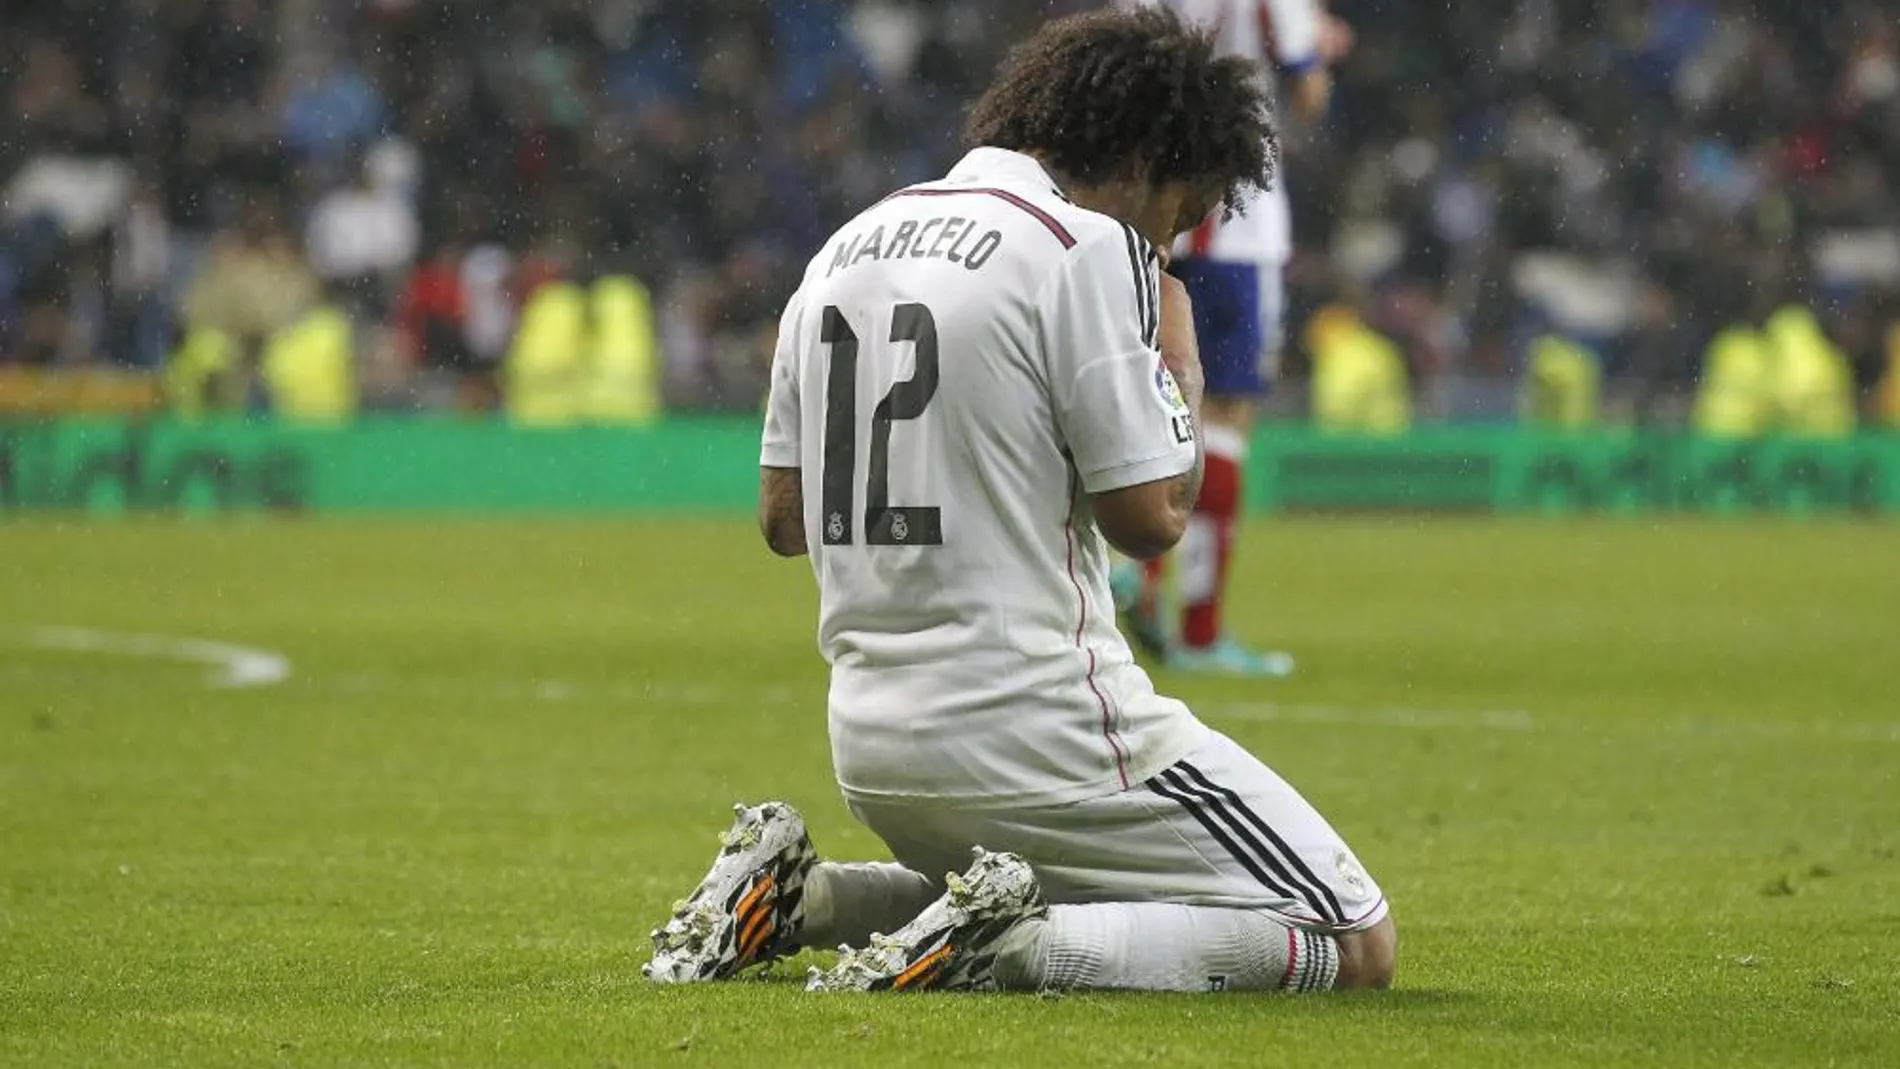 El Madrid debe retomar la senda del éxito tras el bajón de enero